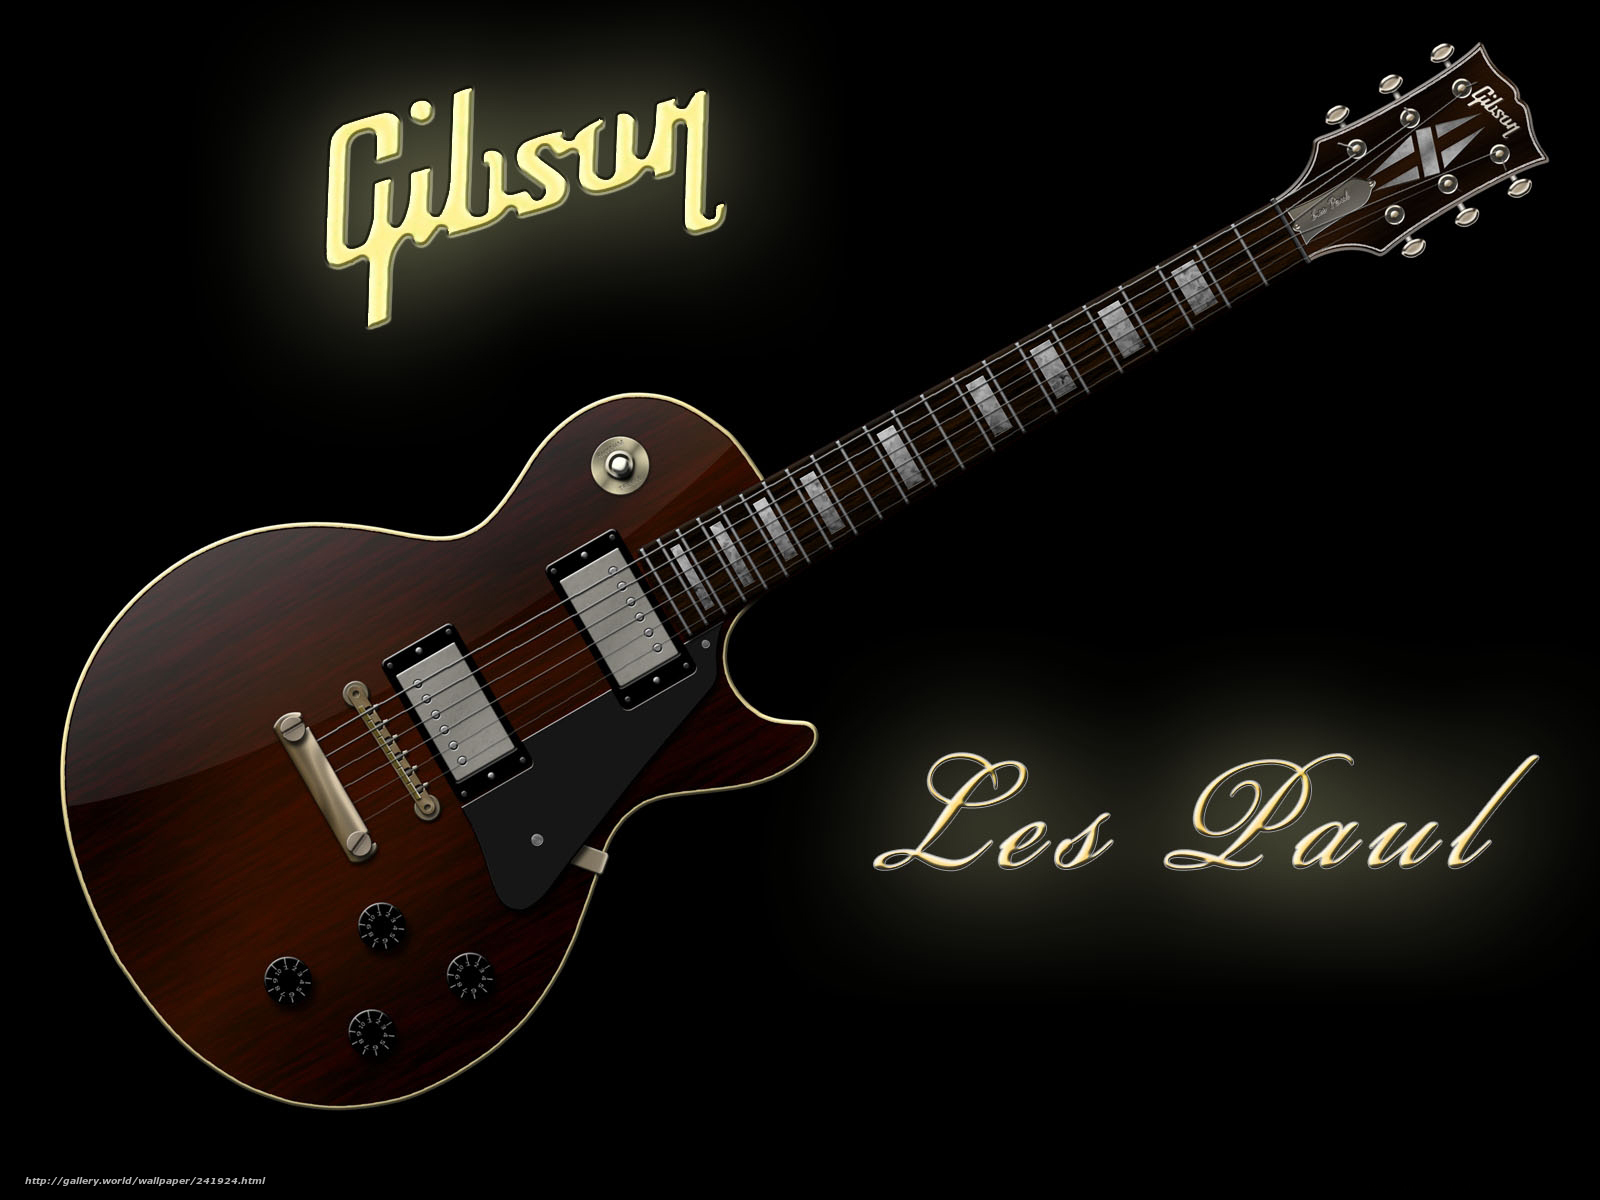 Wallpaper Guitar Gibson